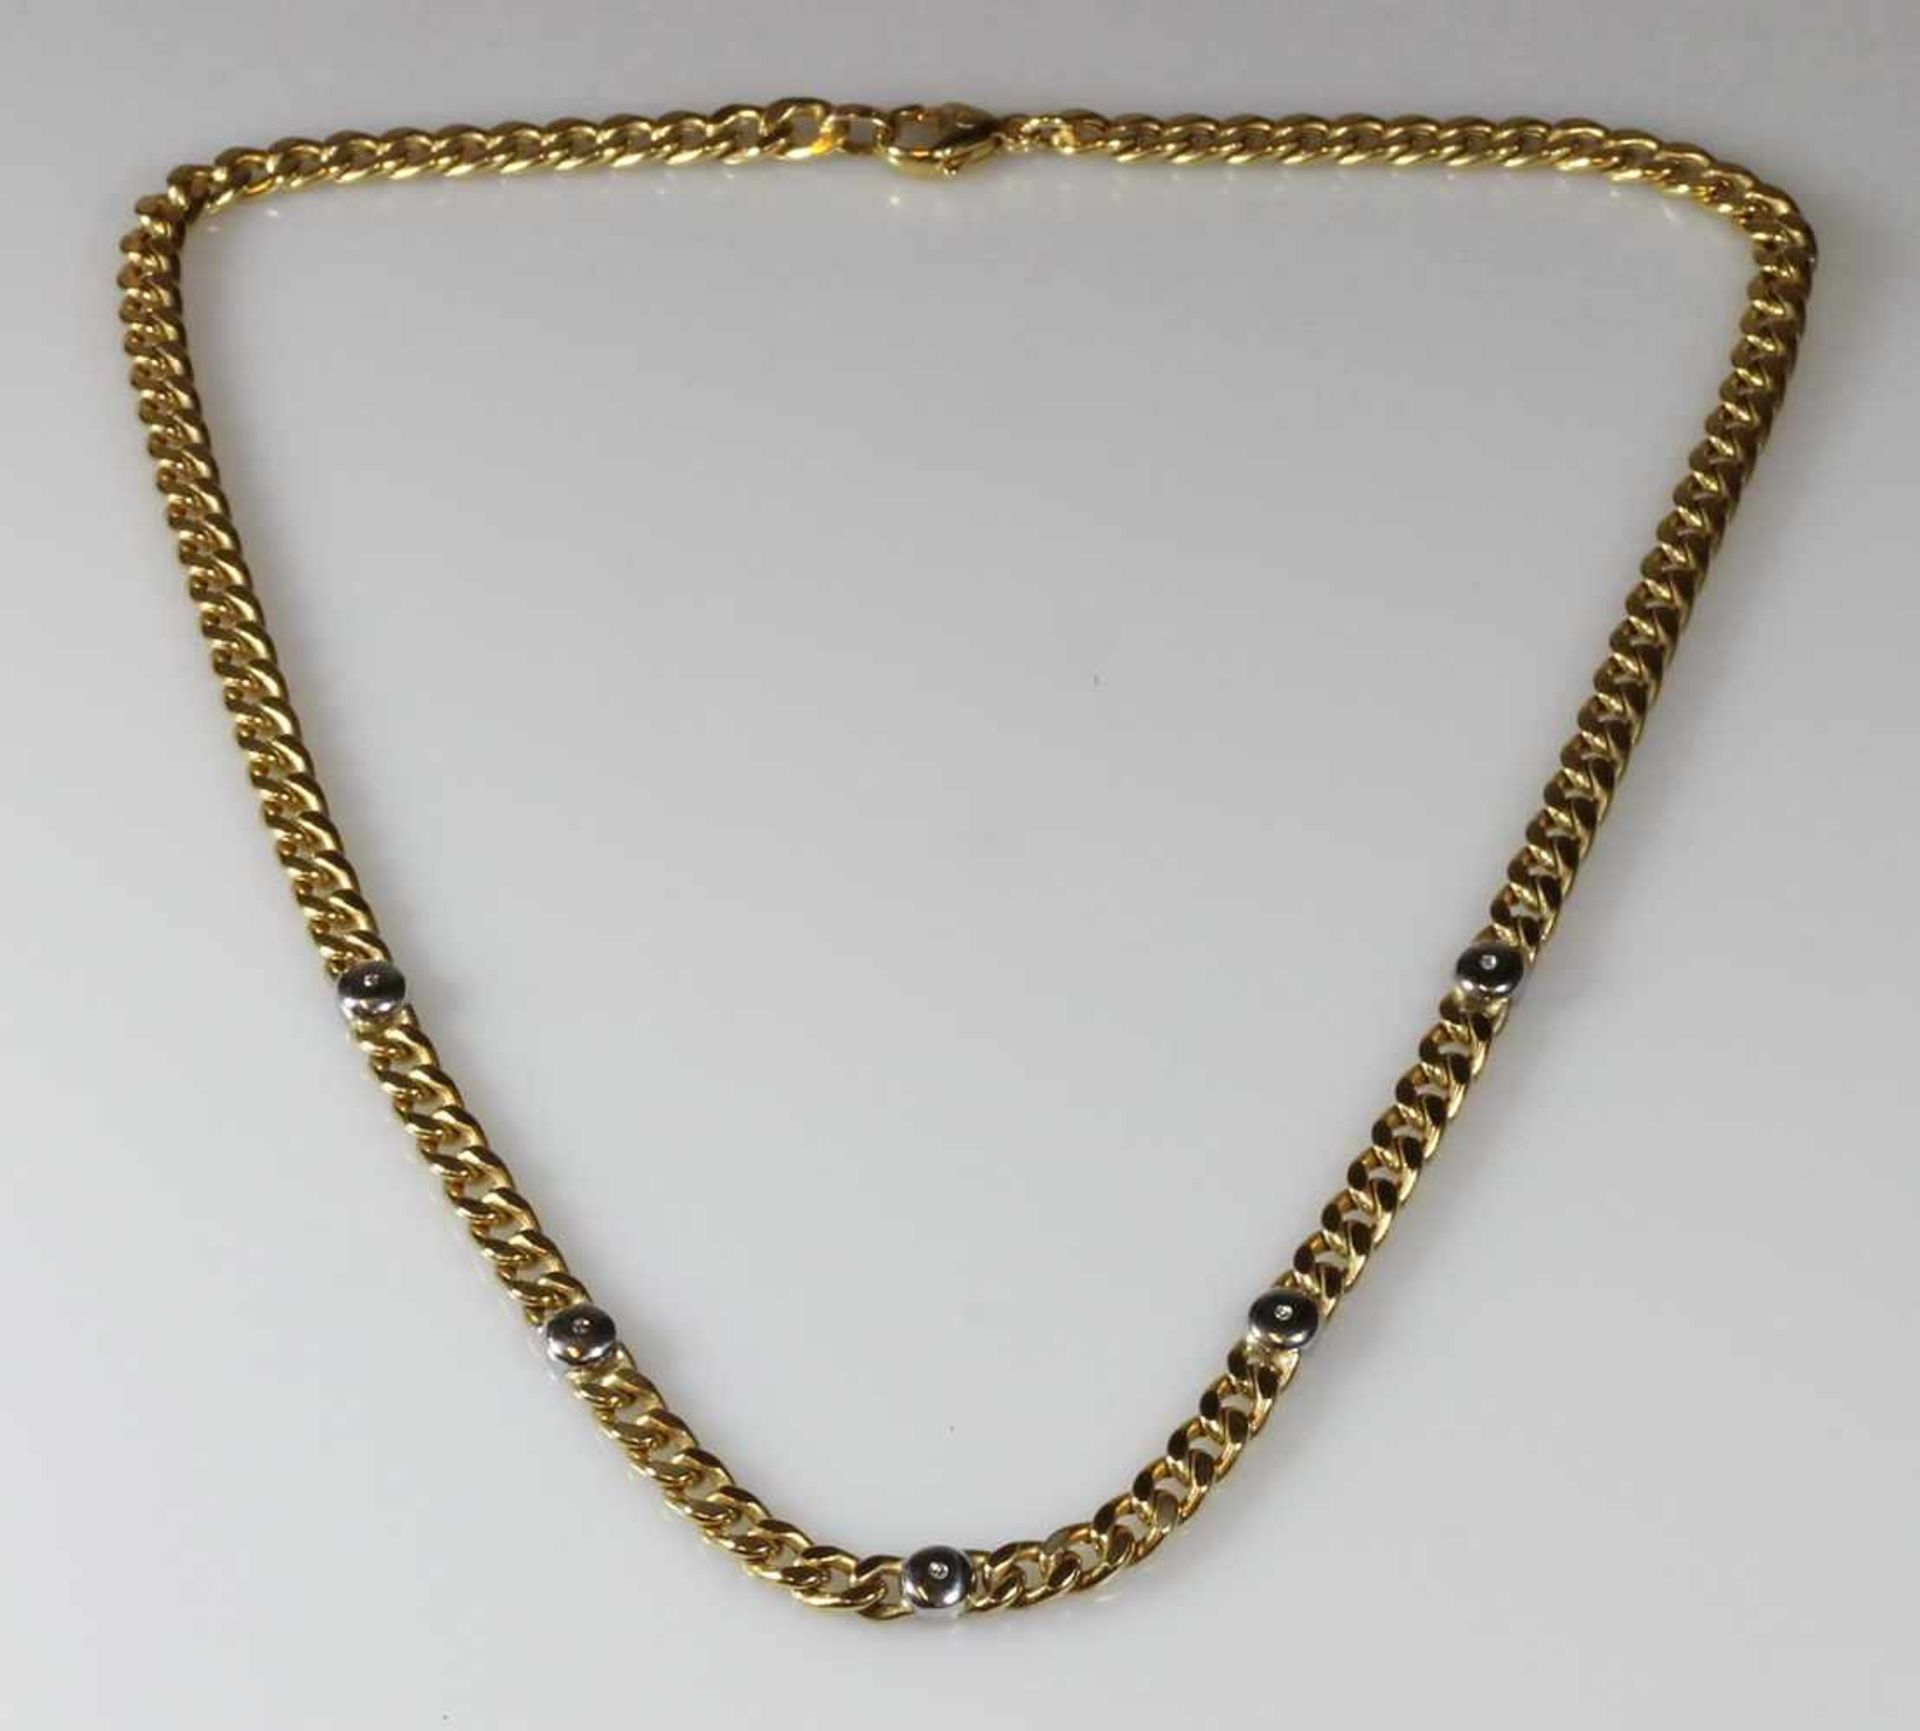 Halskette, WG/GG 585, 5 kleine Diamanten, 44 cm lang, 21 g